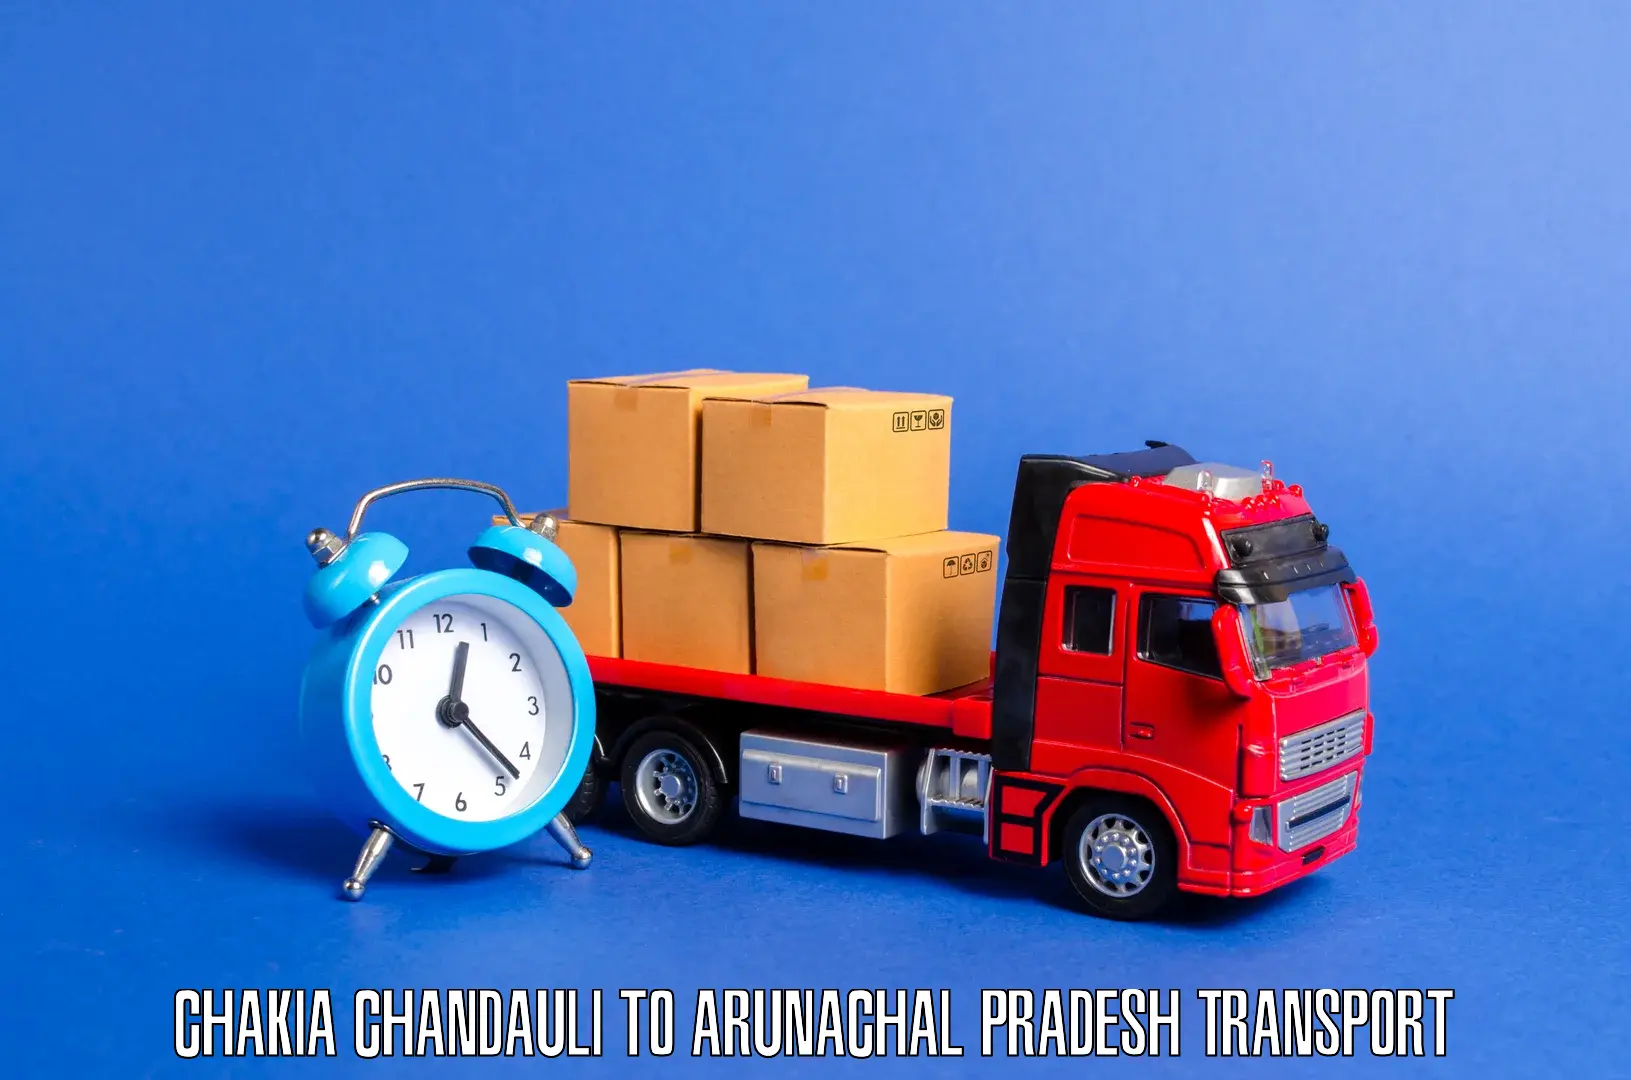 Transport in sharing Chakia Chandauli to Arunachal Pradesh